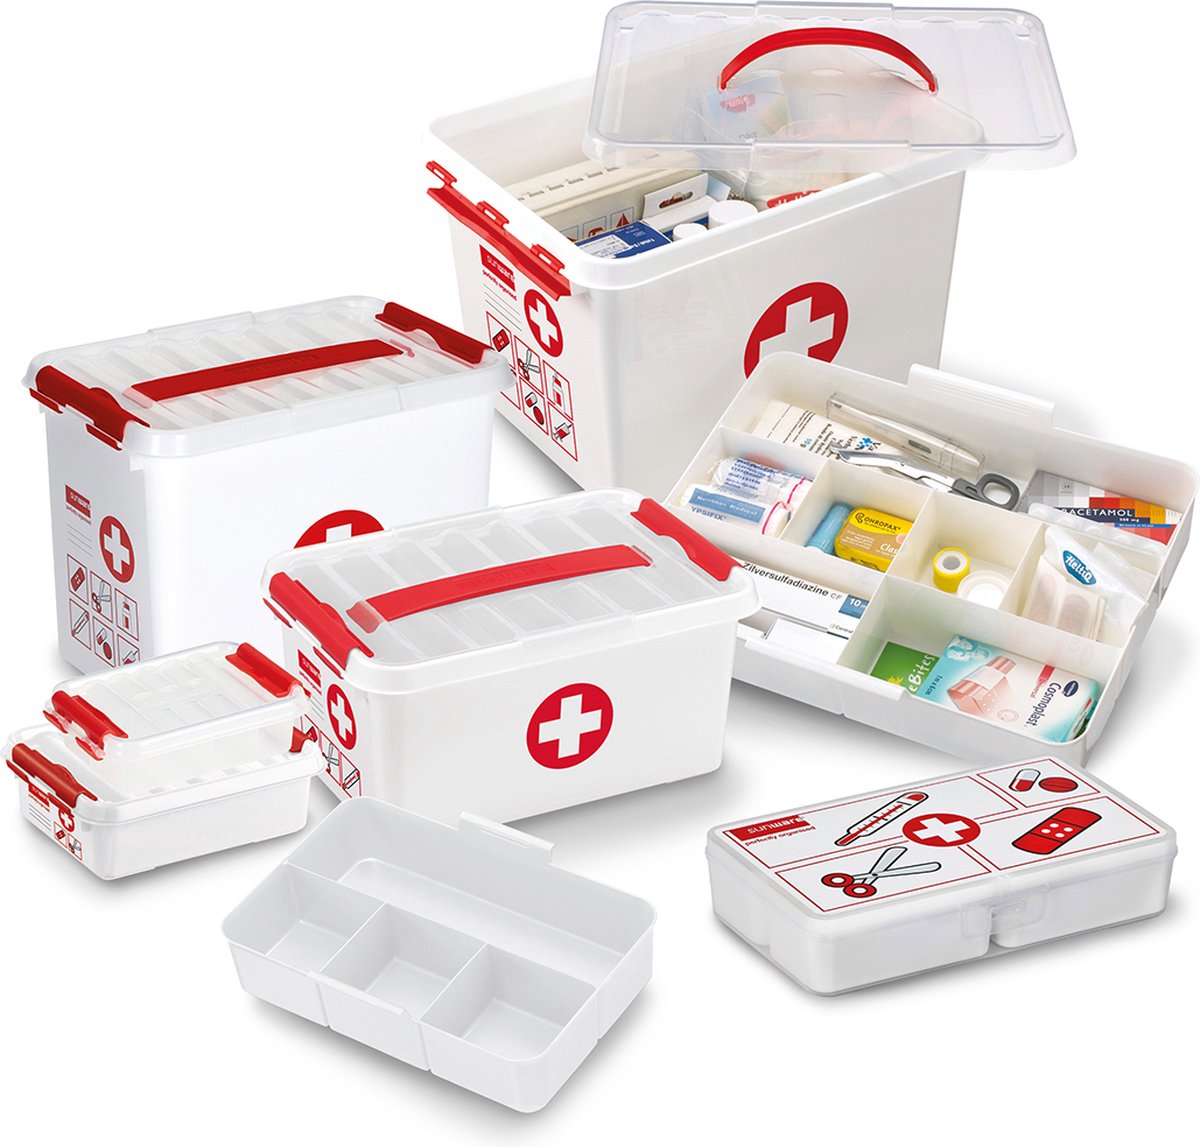 Q-line boîte de premiers secours avec insert 6L blanc rouge